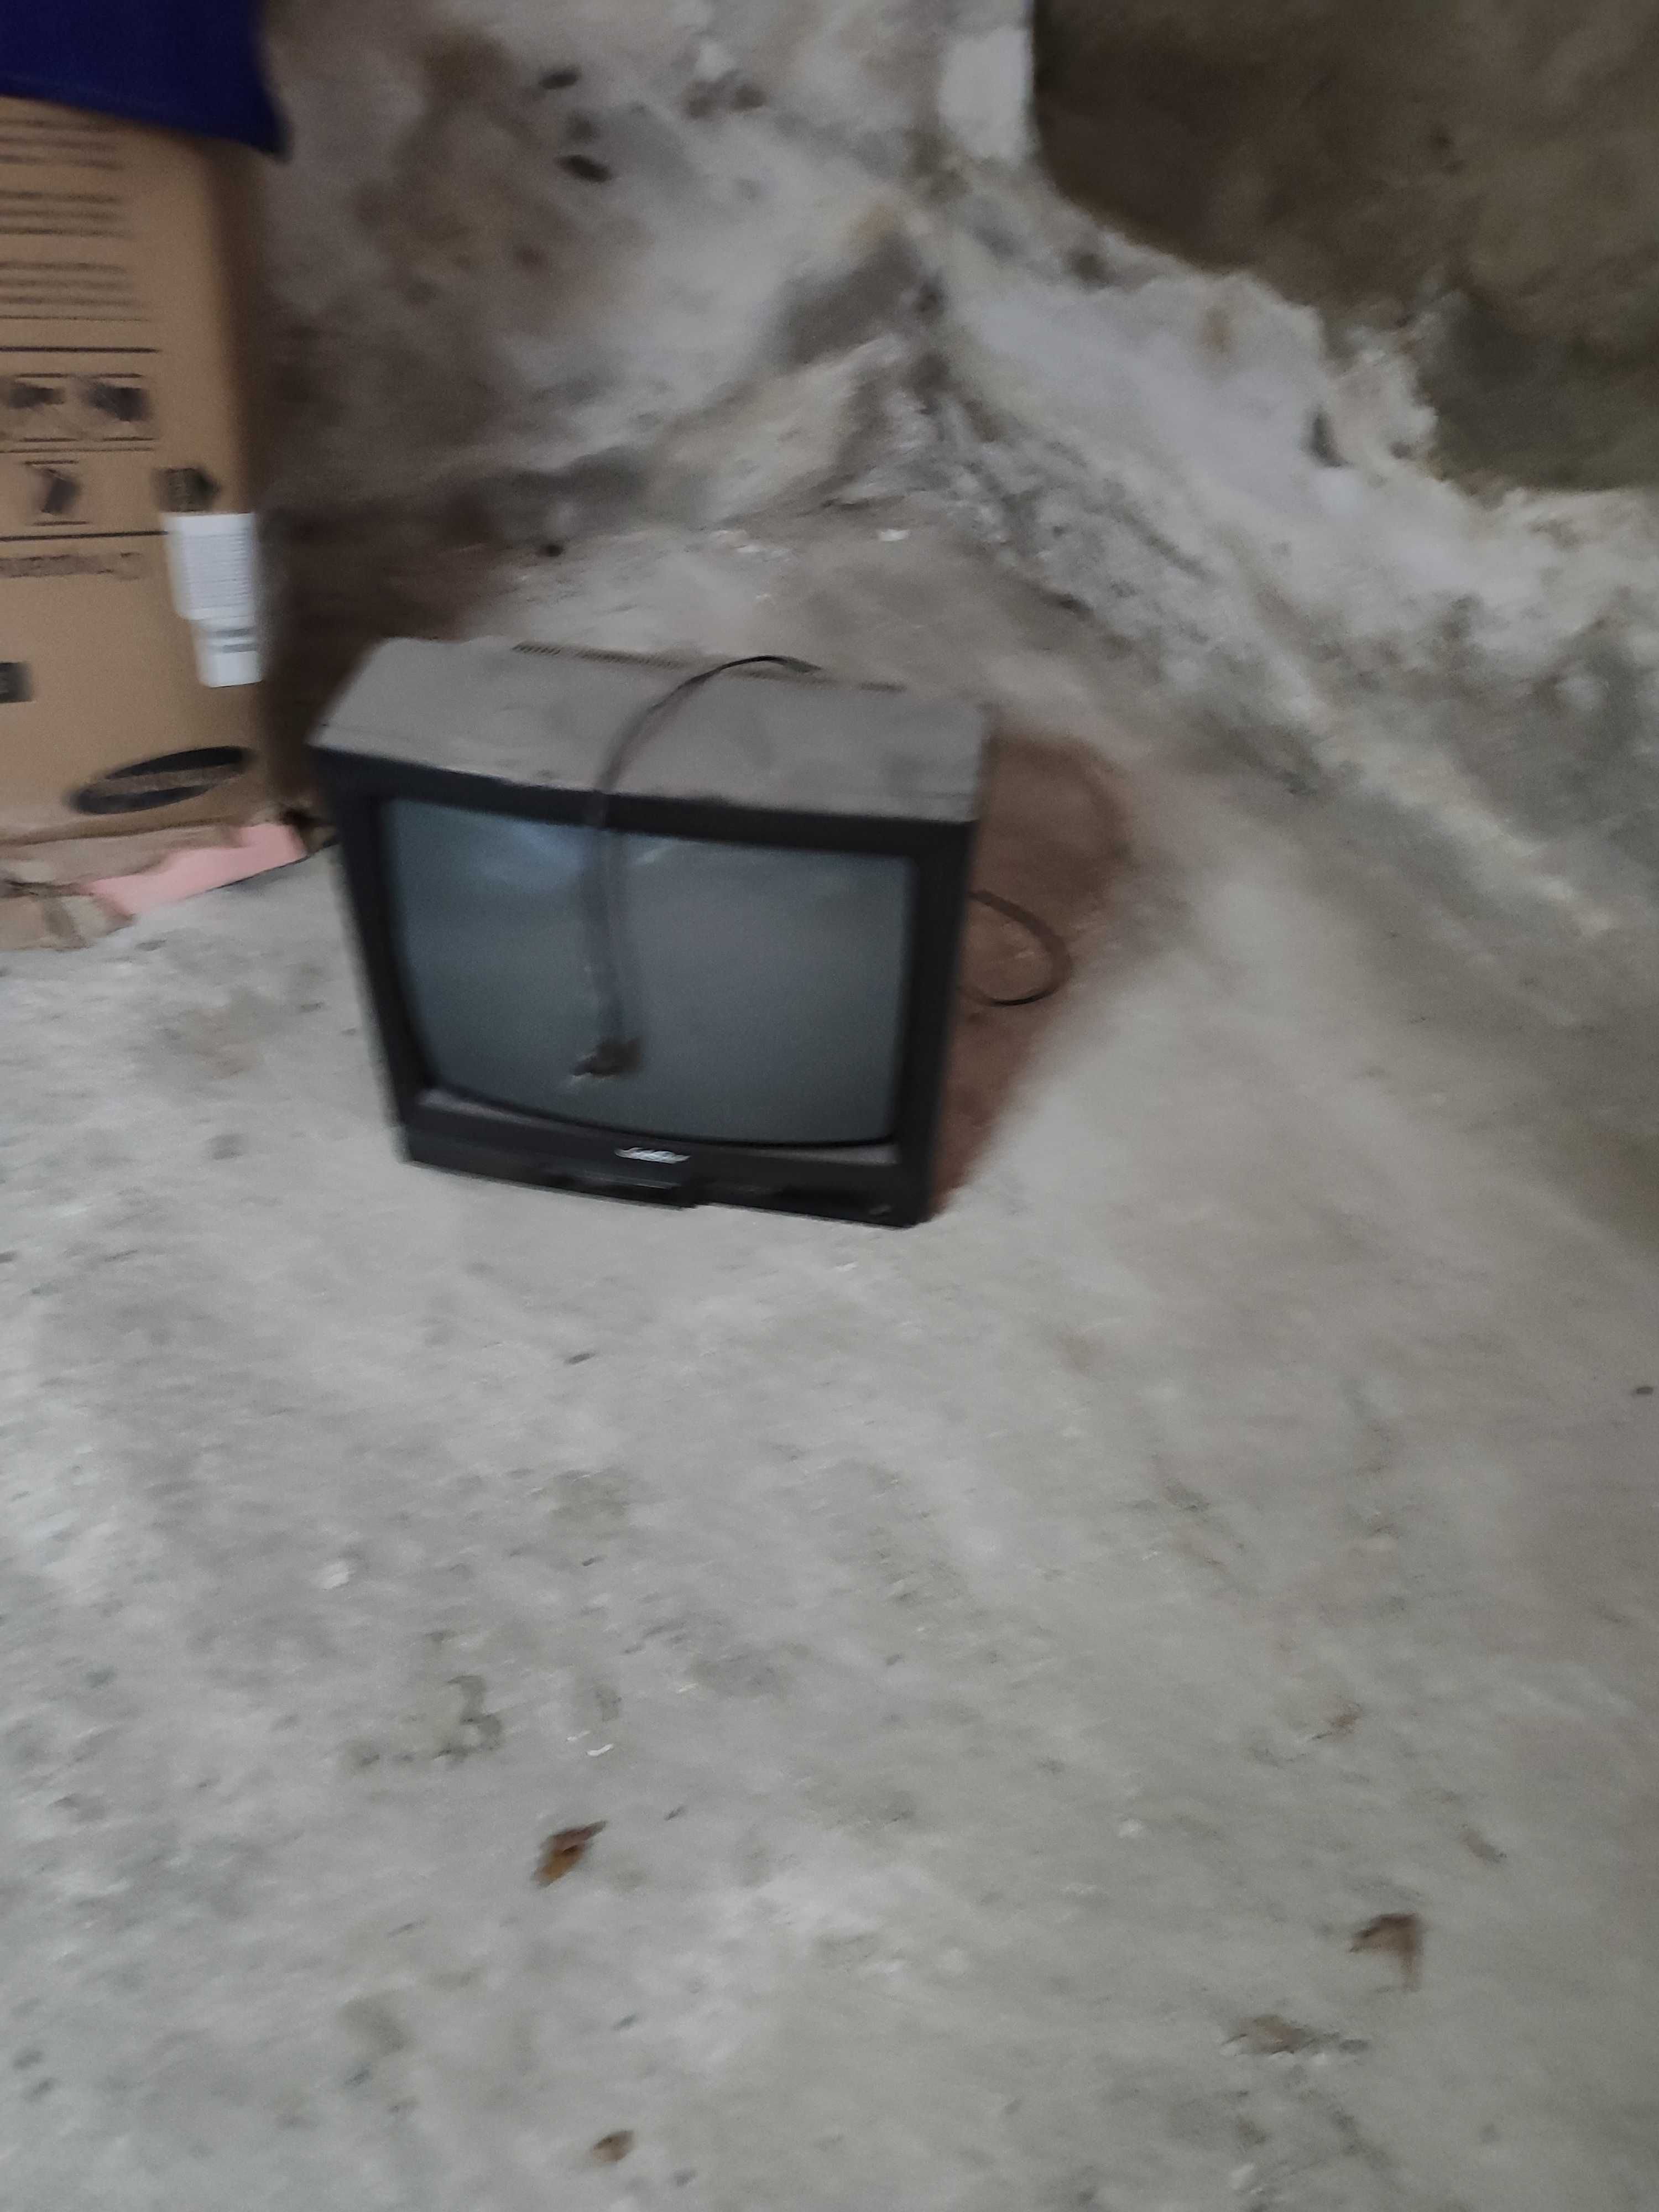 Продается телевизор